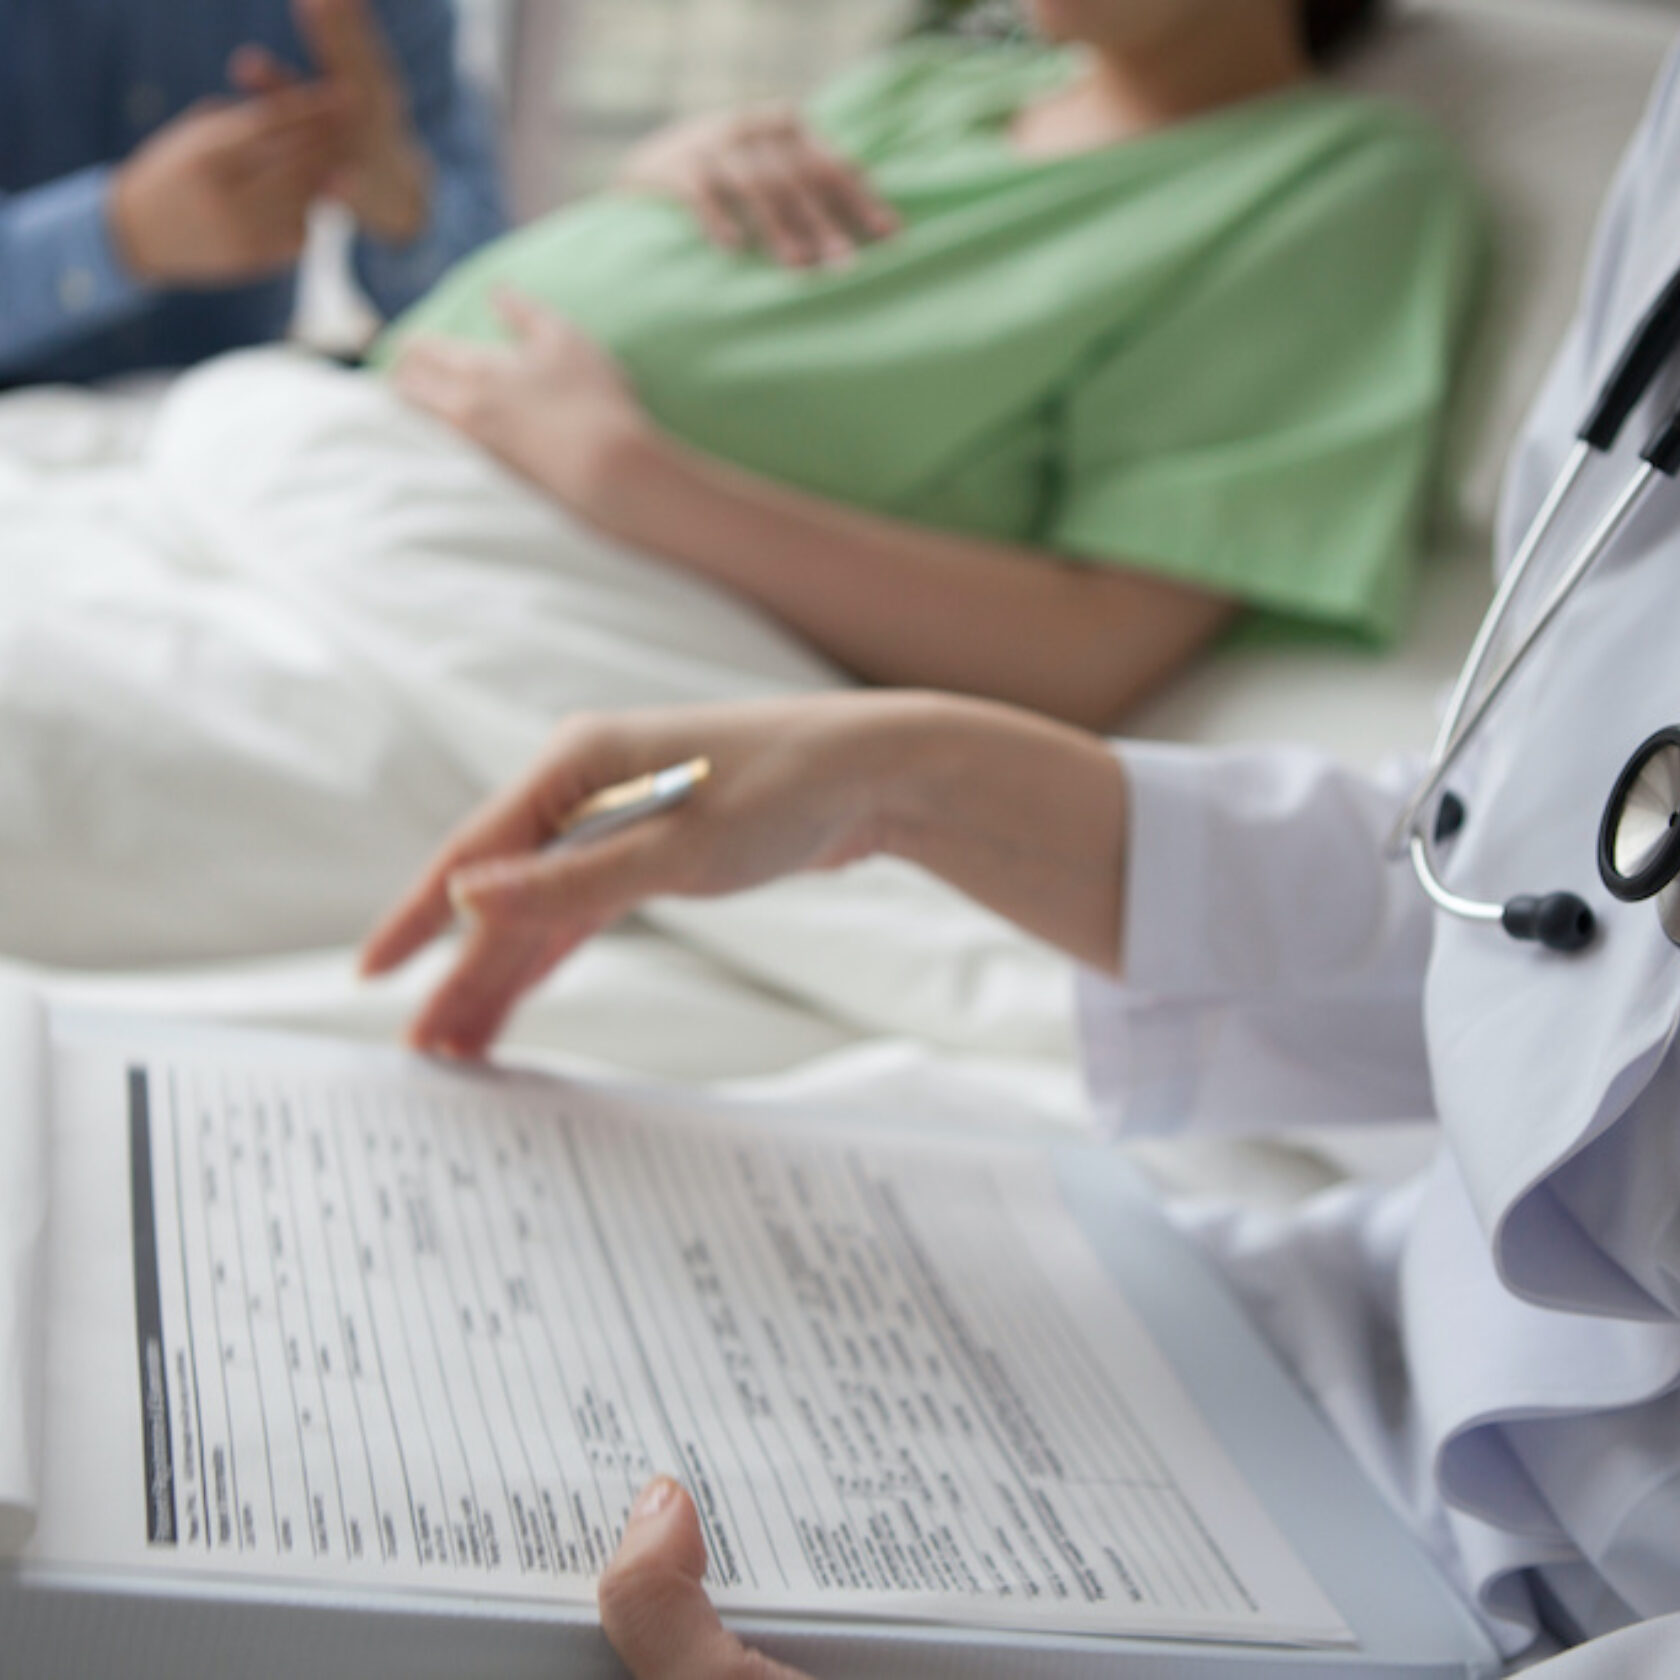 Im Krankenhaus Ärztin am Bett einer Frau nach dem Kaiserschnitt. Sie notiert etwas in der Patientenakte.